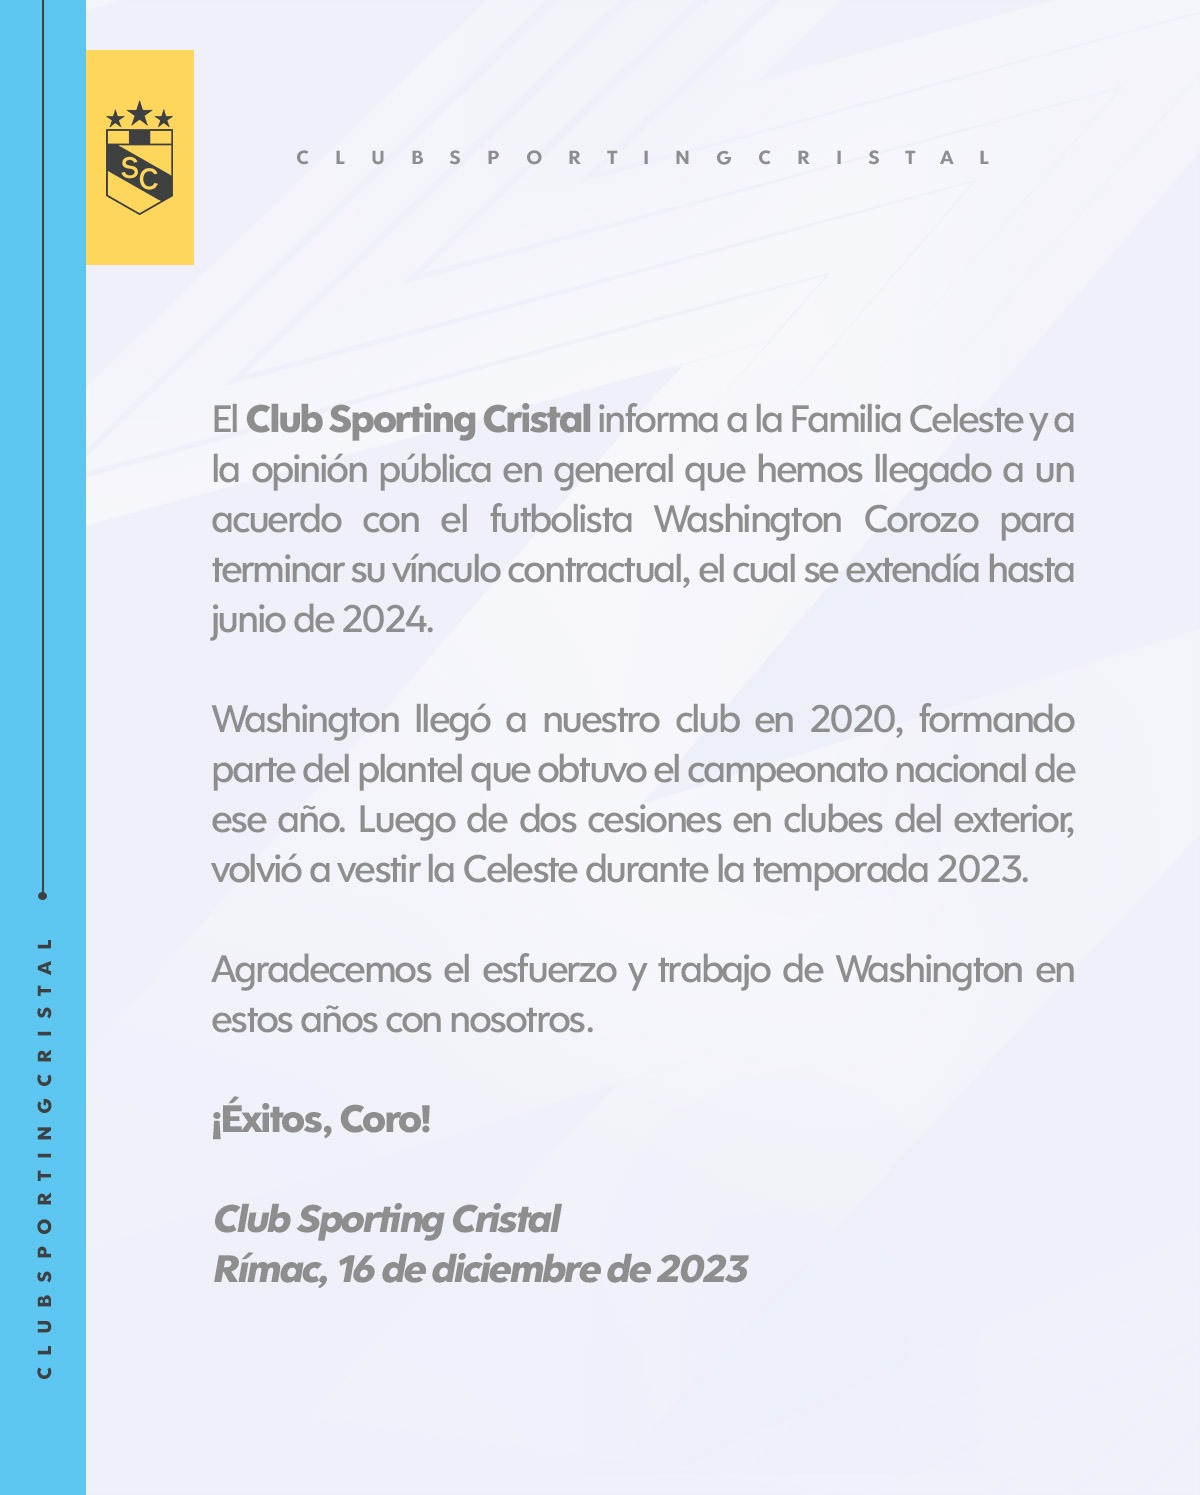 El comunicado de Sporting Cristal sobre Washington Corozo. | Fuente: @ClubSCristal